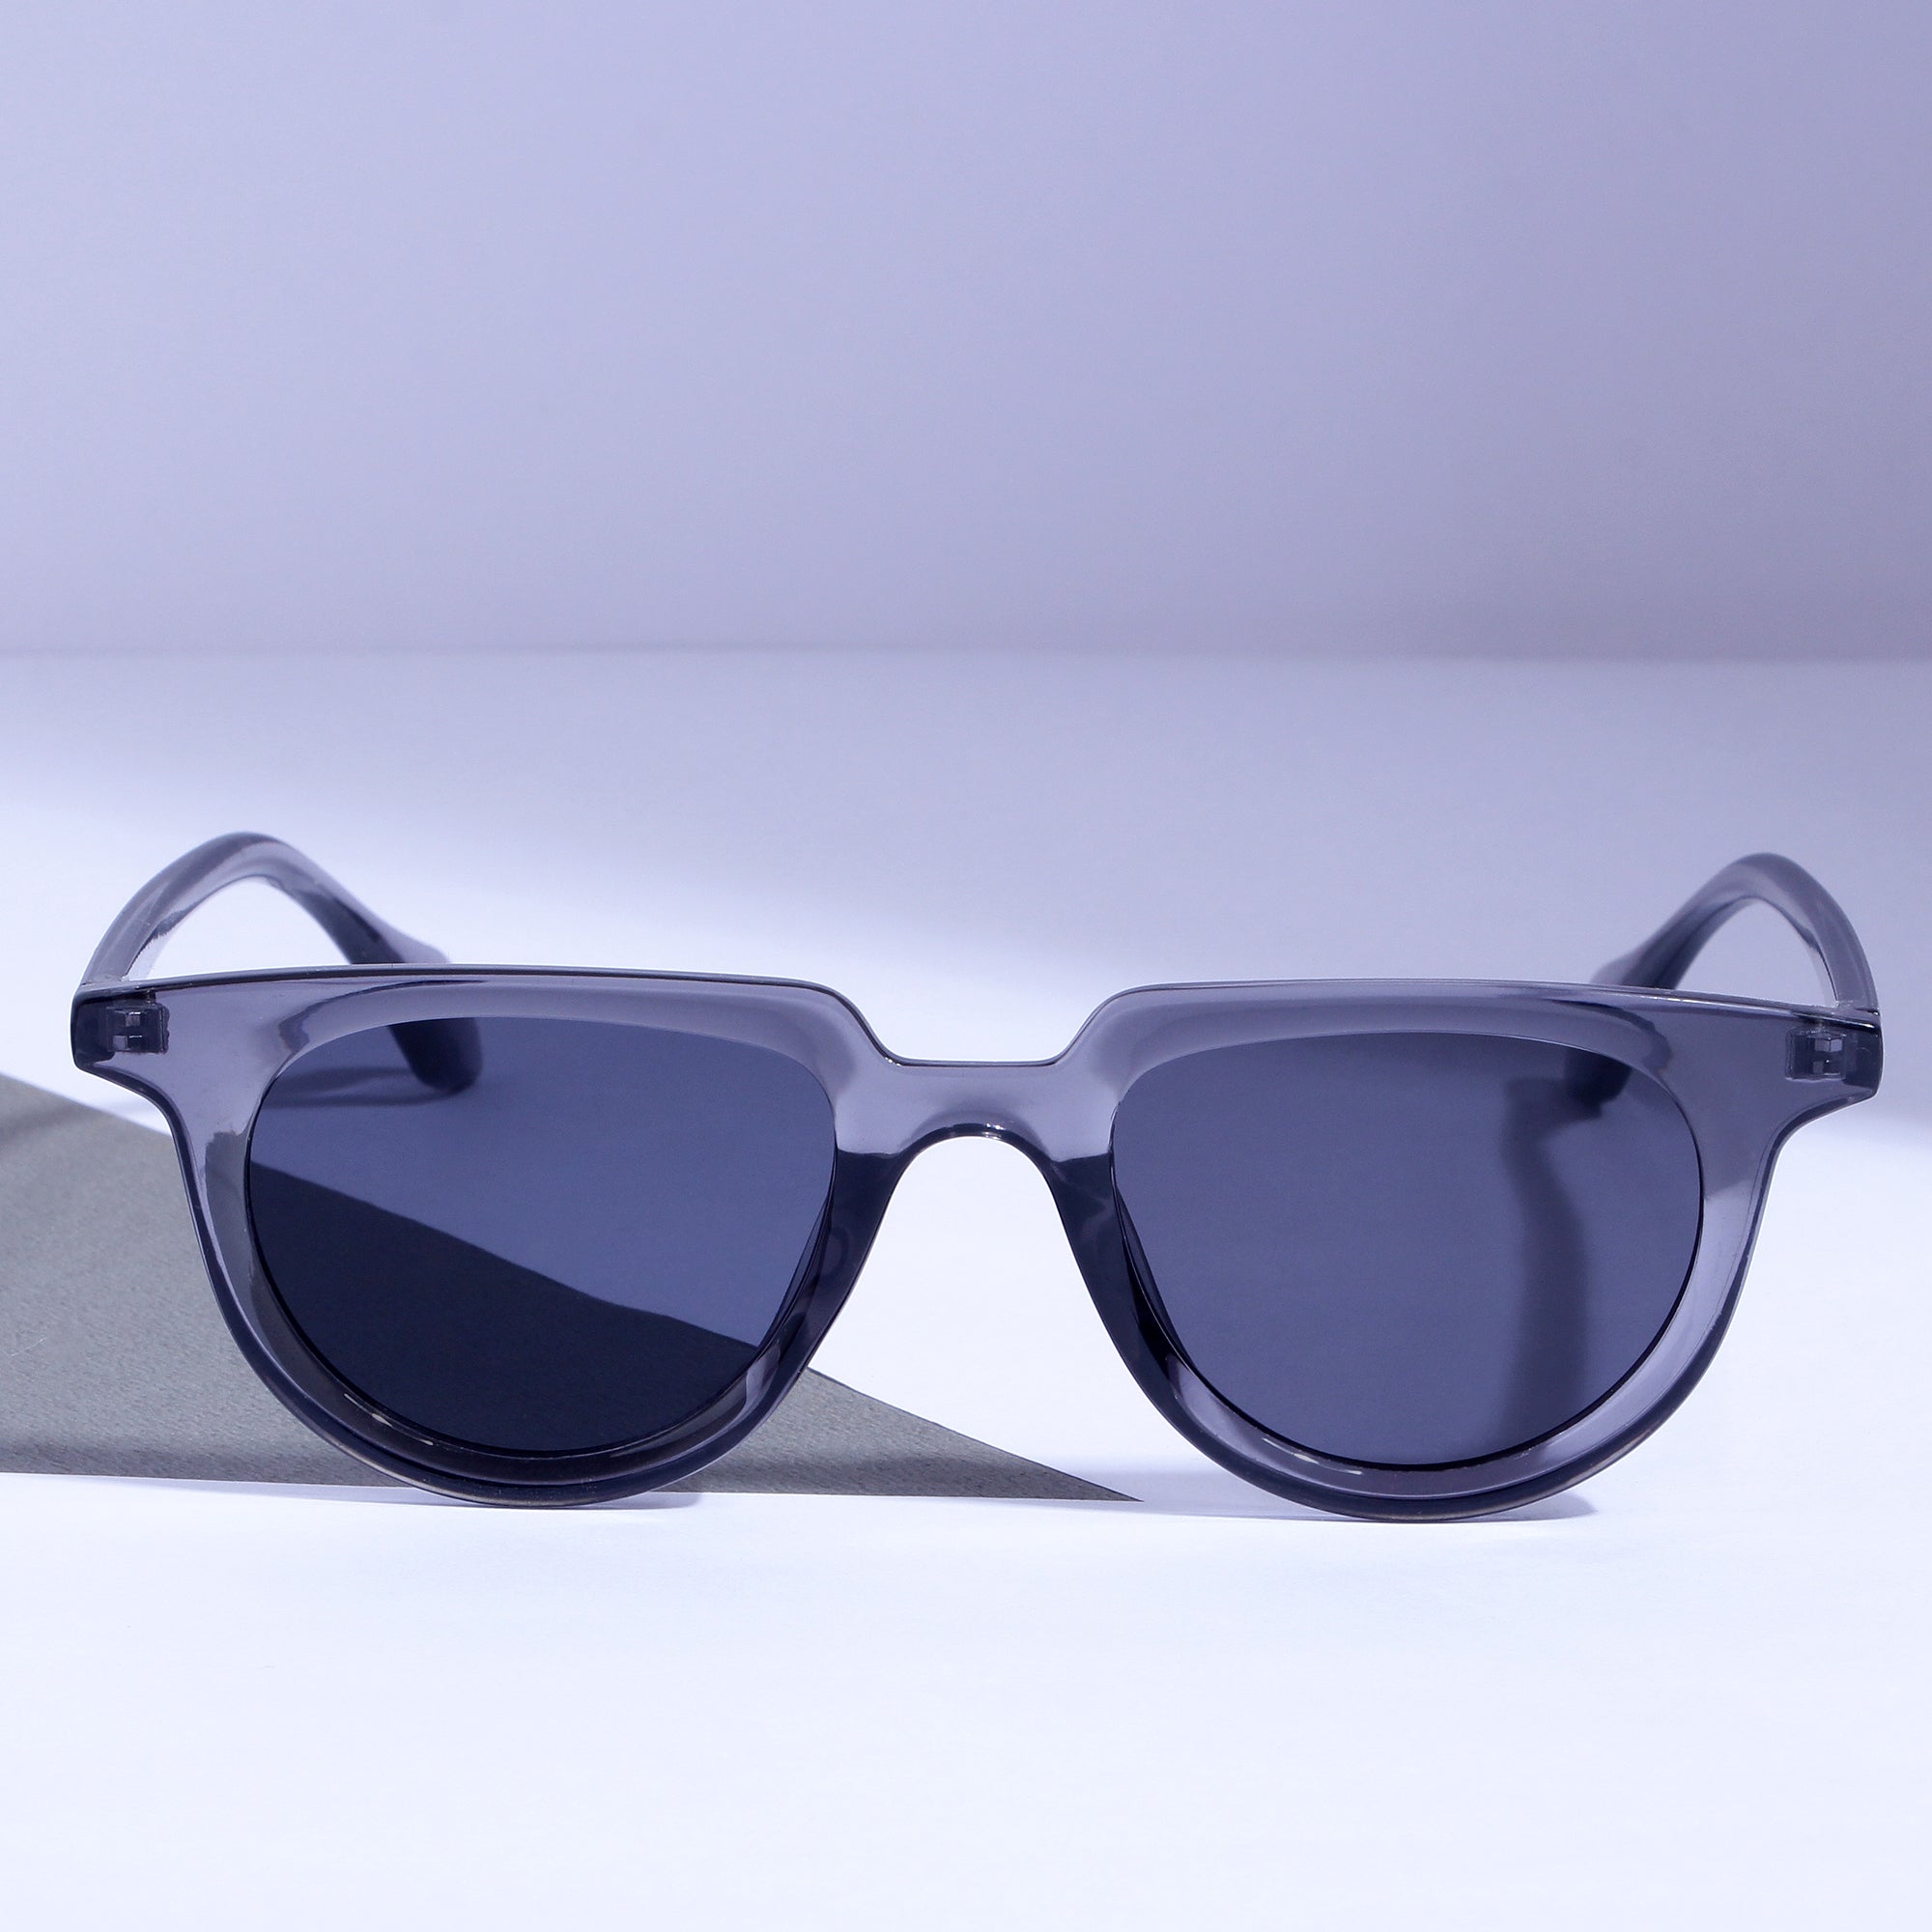 Gloviks V1 White and Black Sunglasses